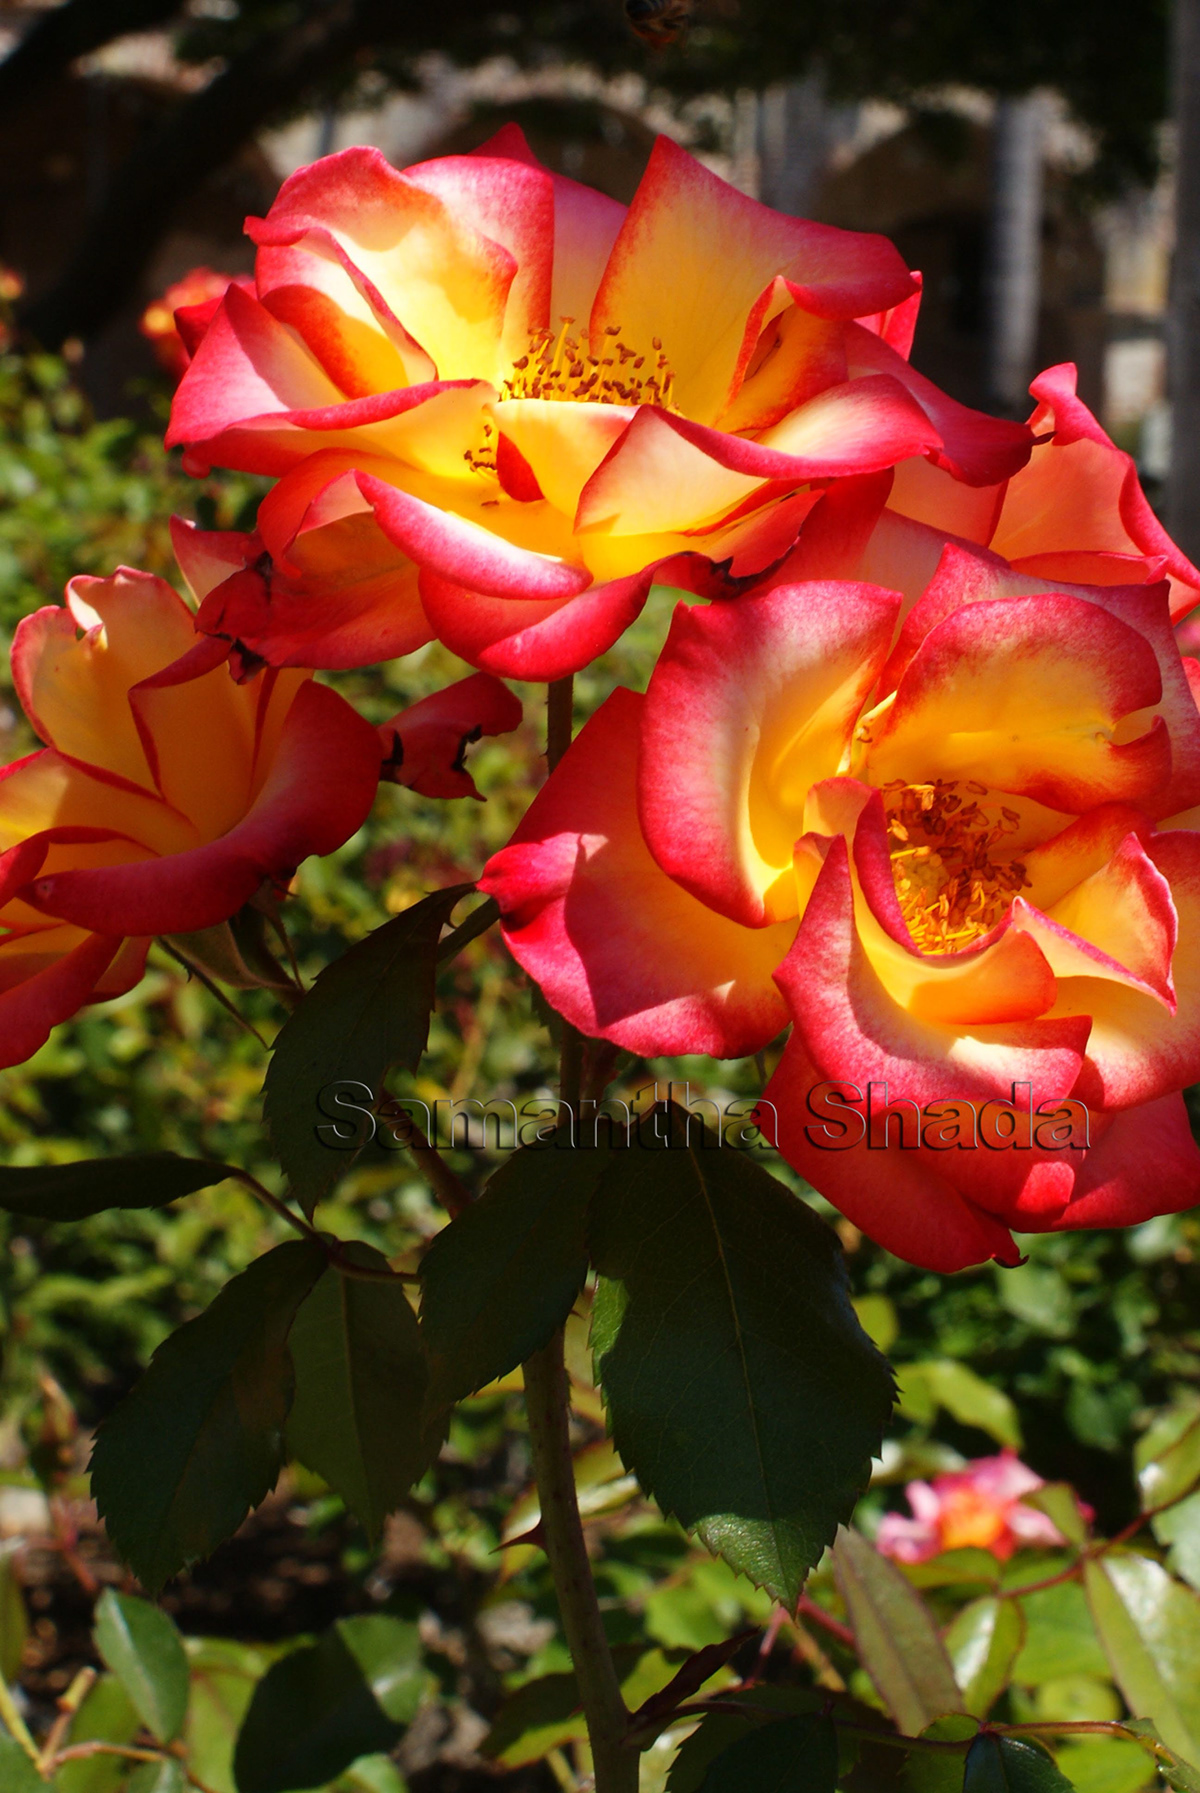 Roses valentine garden Nature beauty Love sunlight rose Flowers natural flower